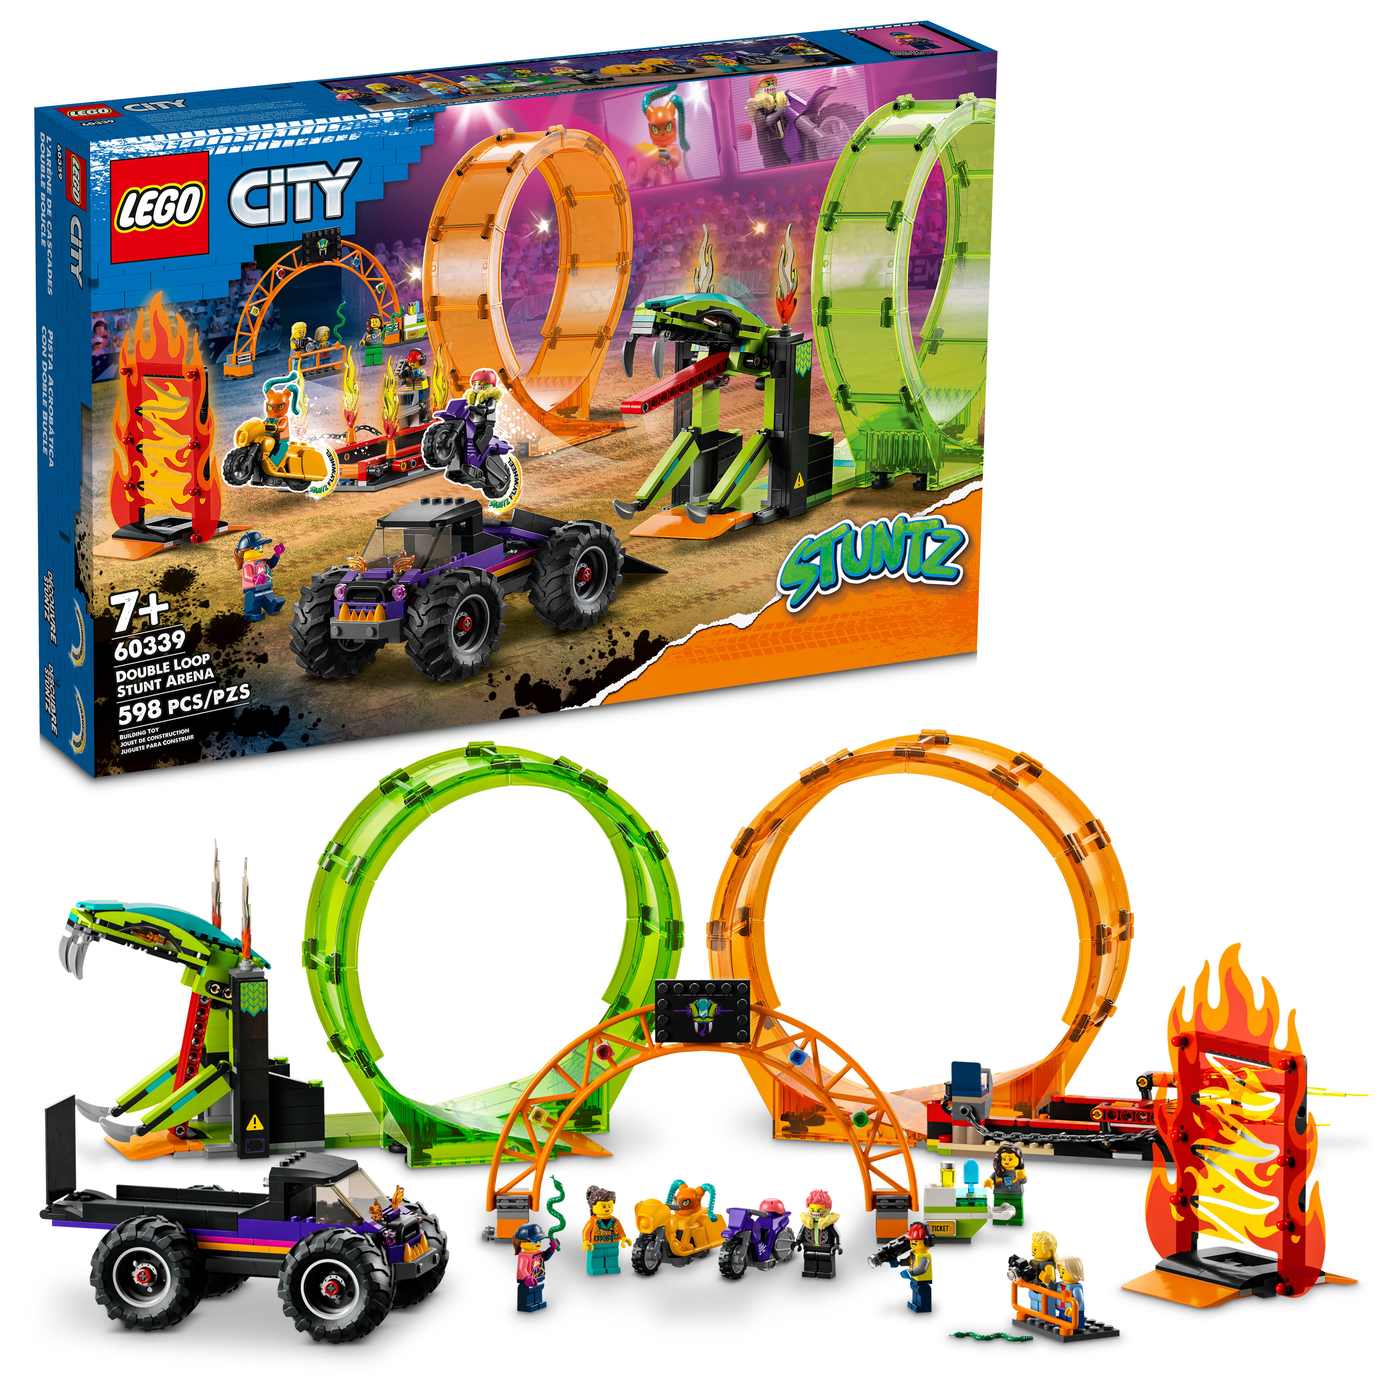 60339 Double Loop Stunt Arena LEGO LEG60339